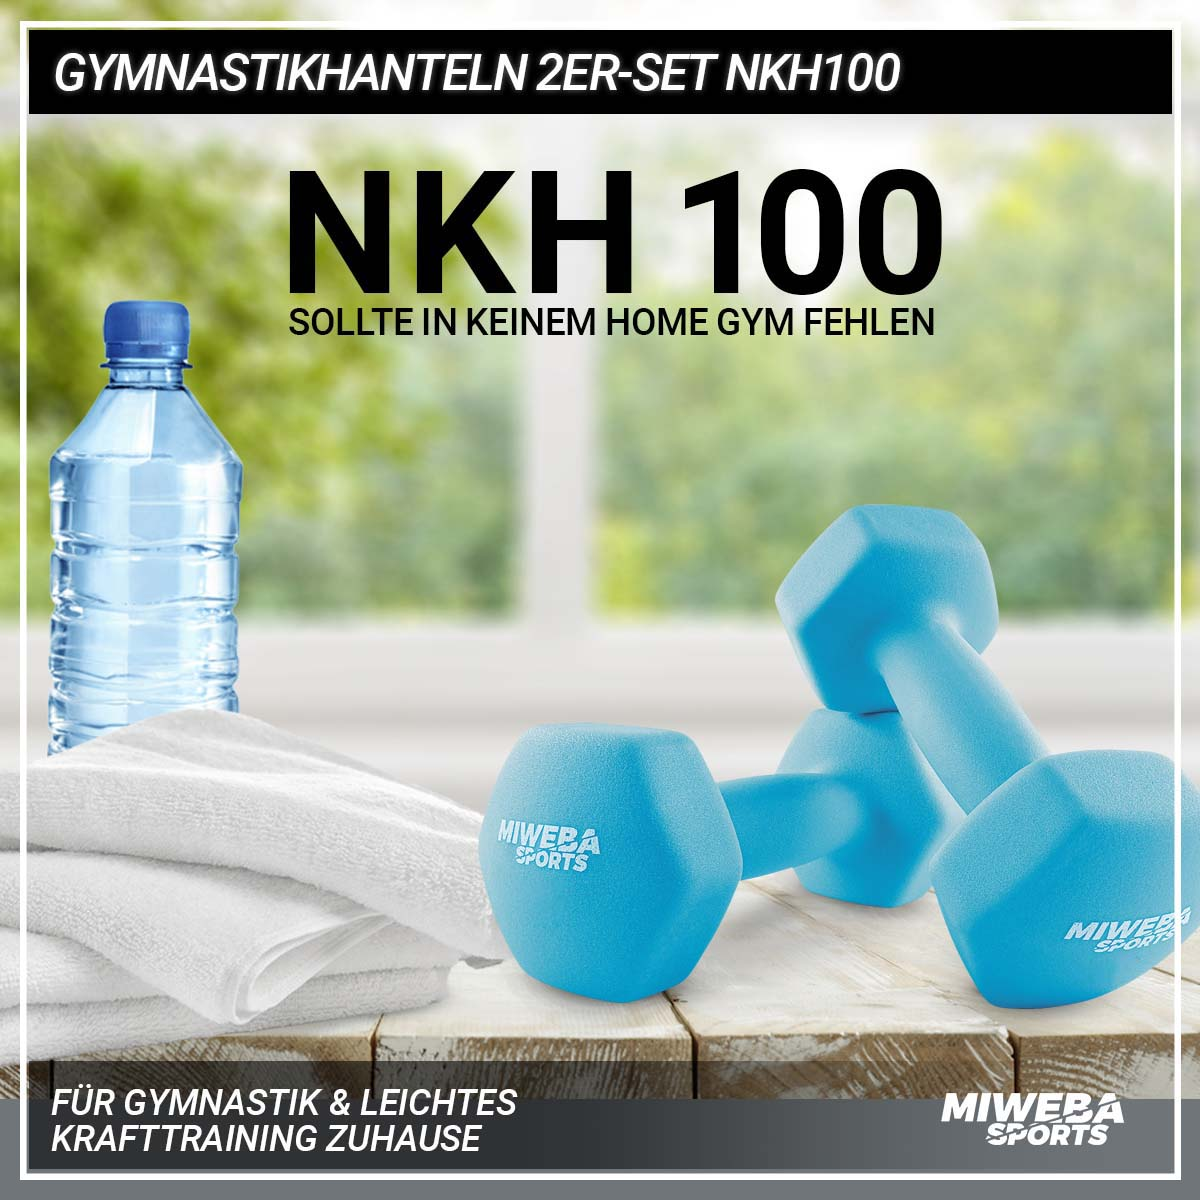 MIWEBA SPORTS Kurzhantel, Türkis Gymnastikhanteln NKH100 Set 2er